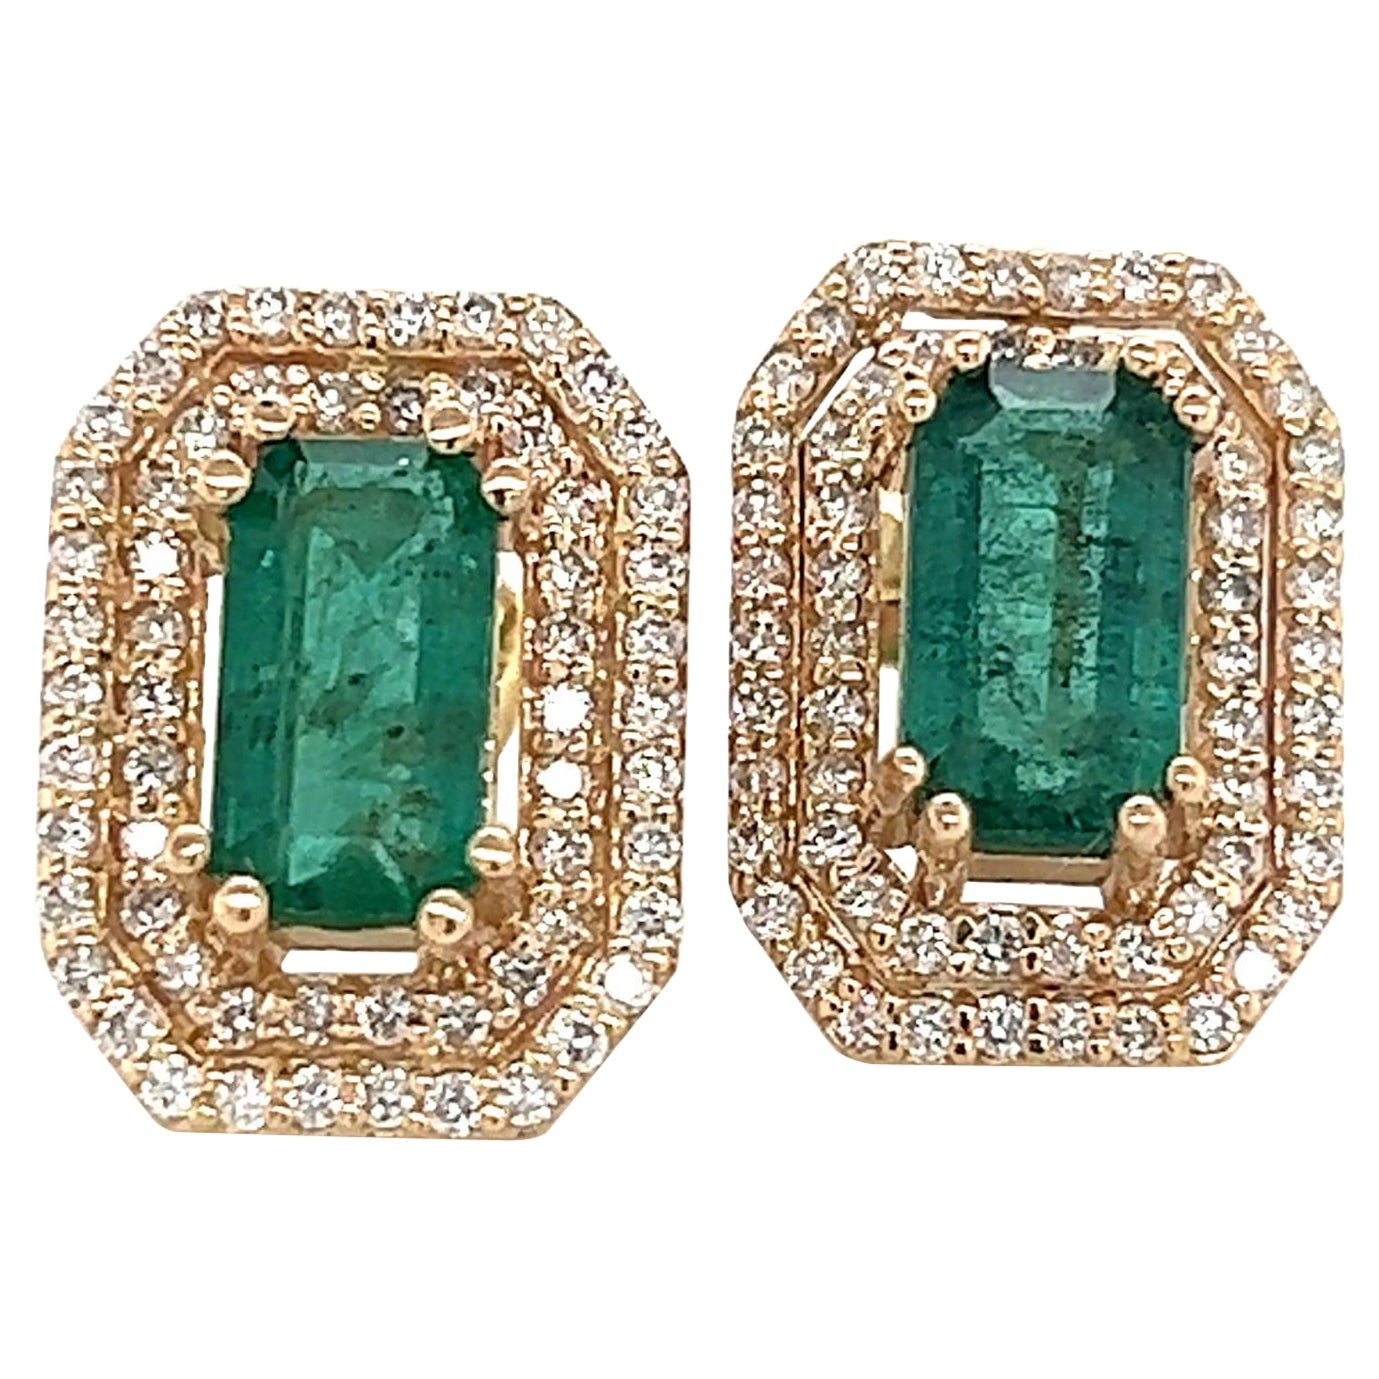 Emerald Diamond Stud Earrings 14k Gold 2.52 TCW Certified